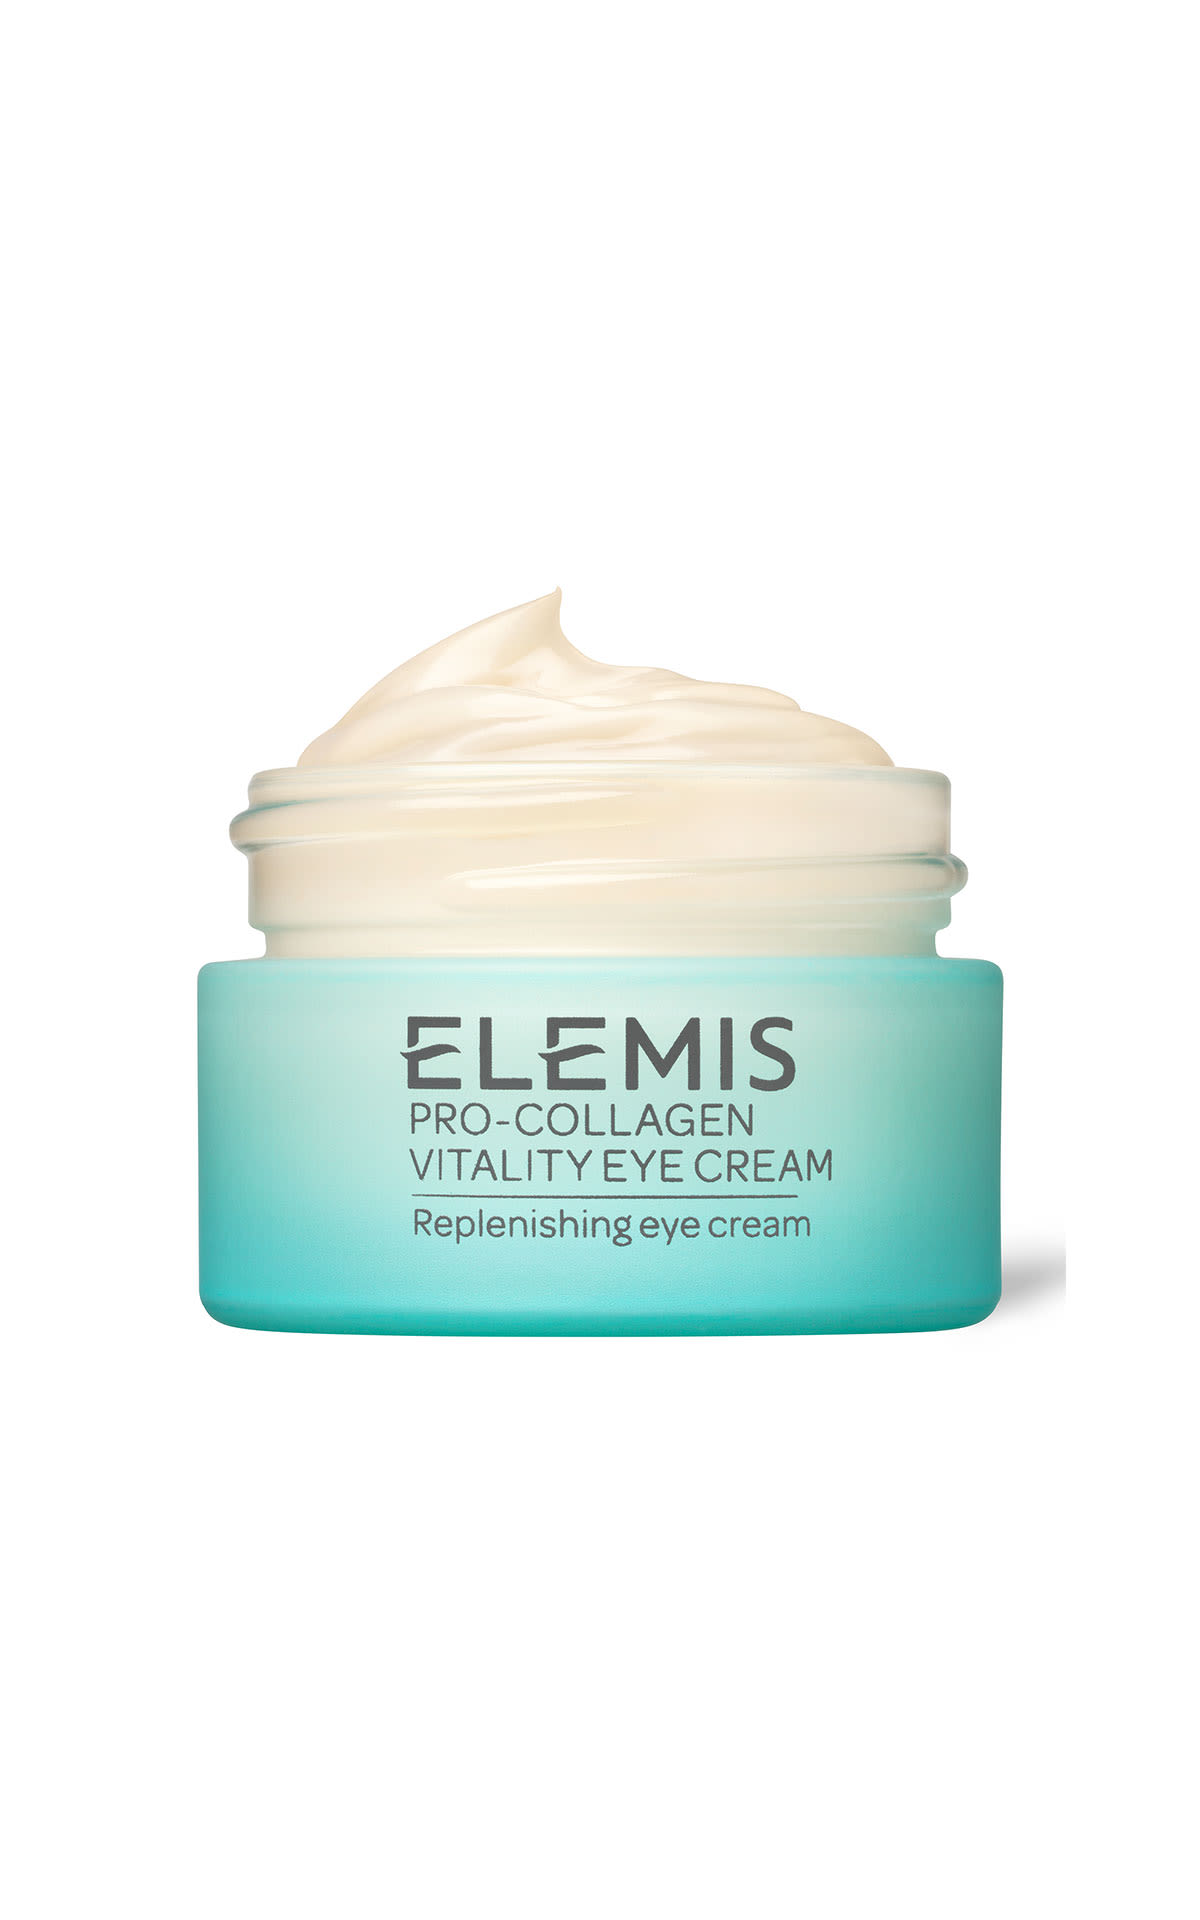 ELEMIS Pro-Collagen vitality eye cream 15ml from Bicester Village